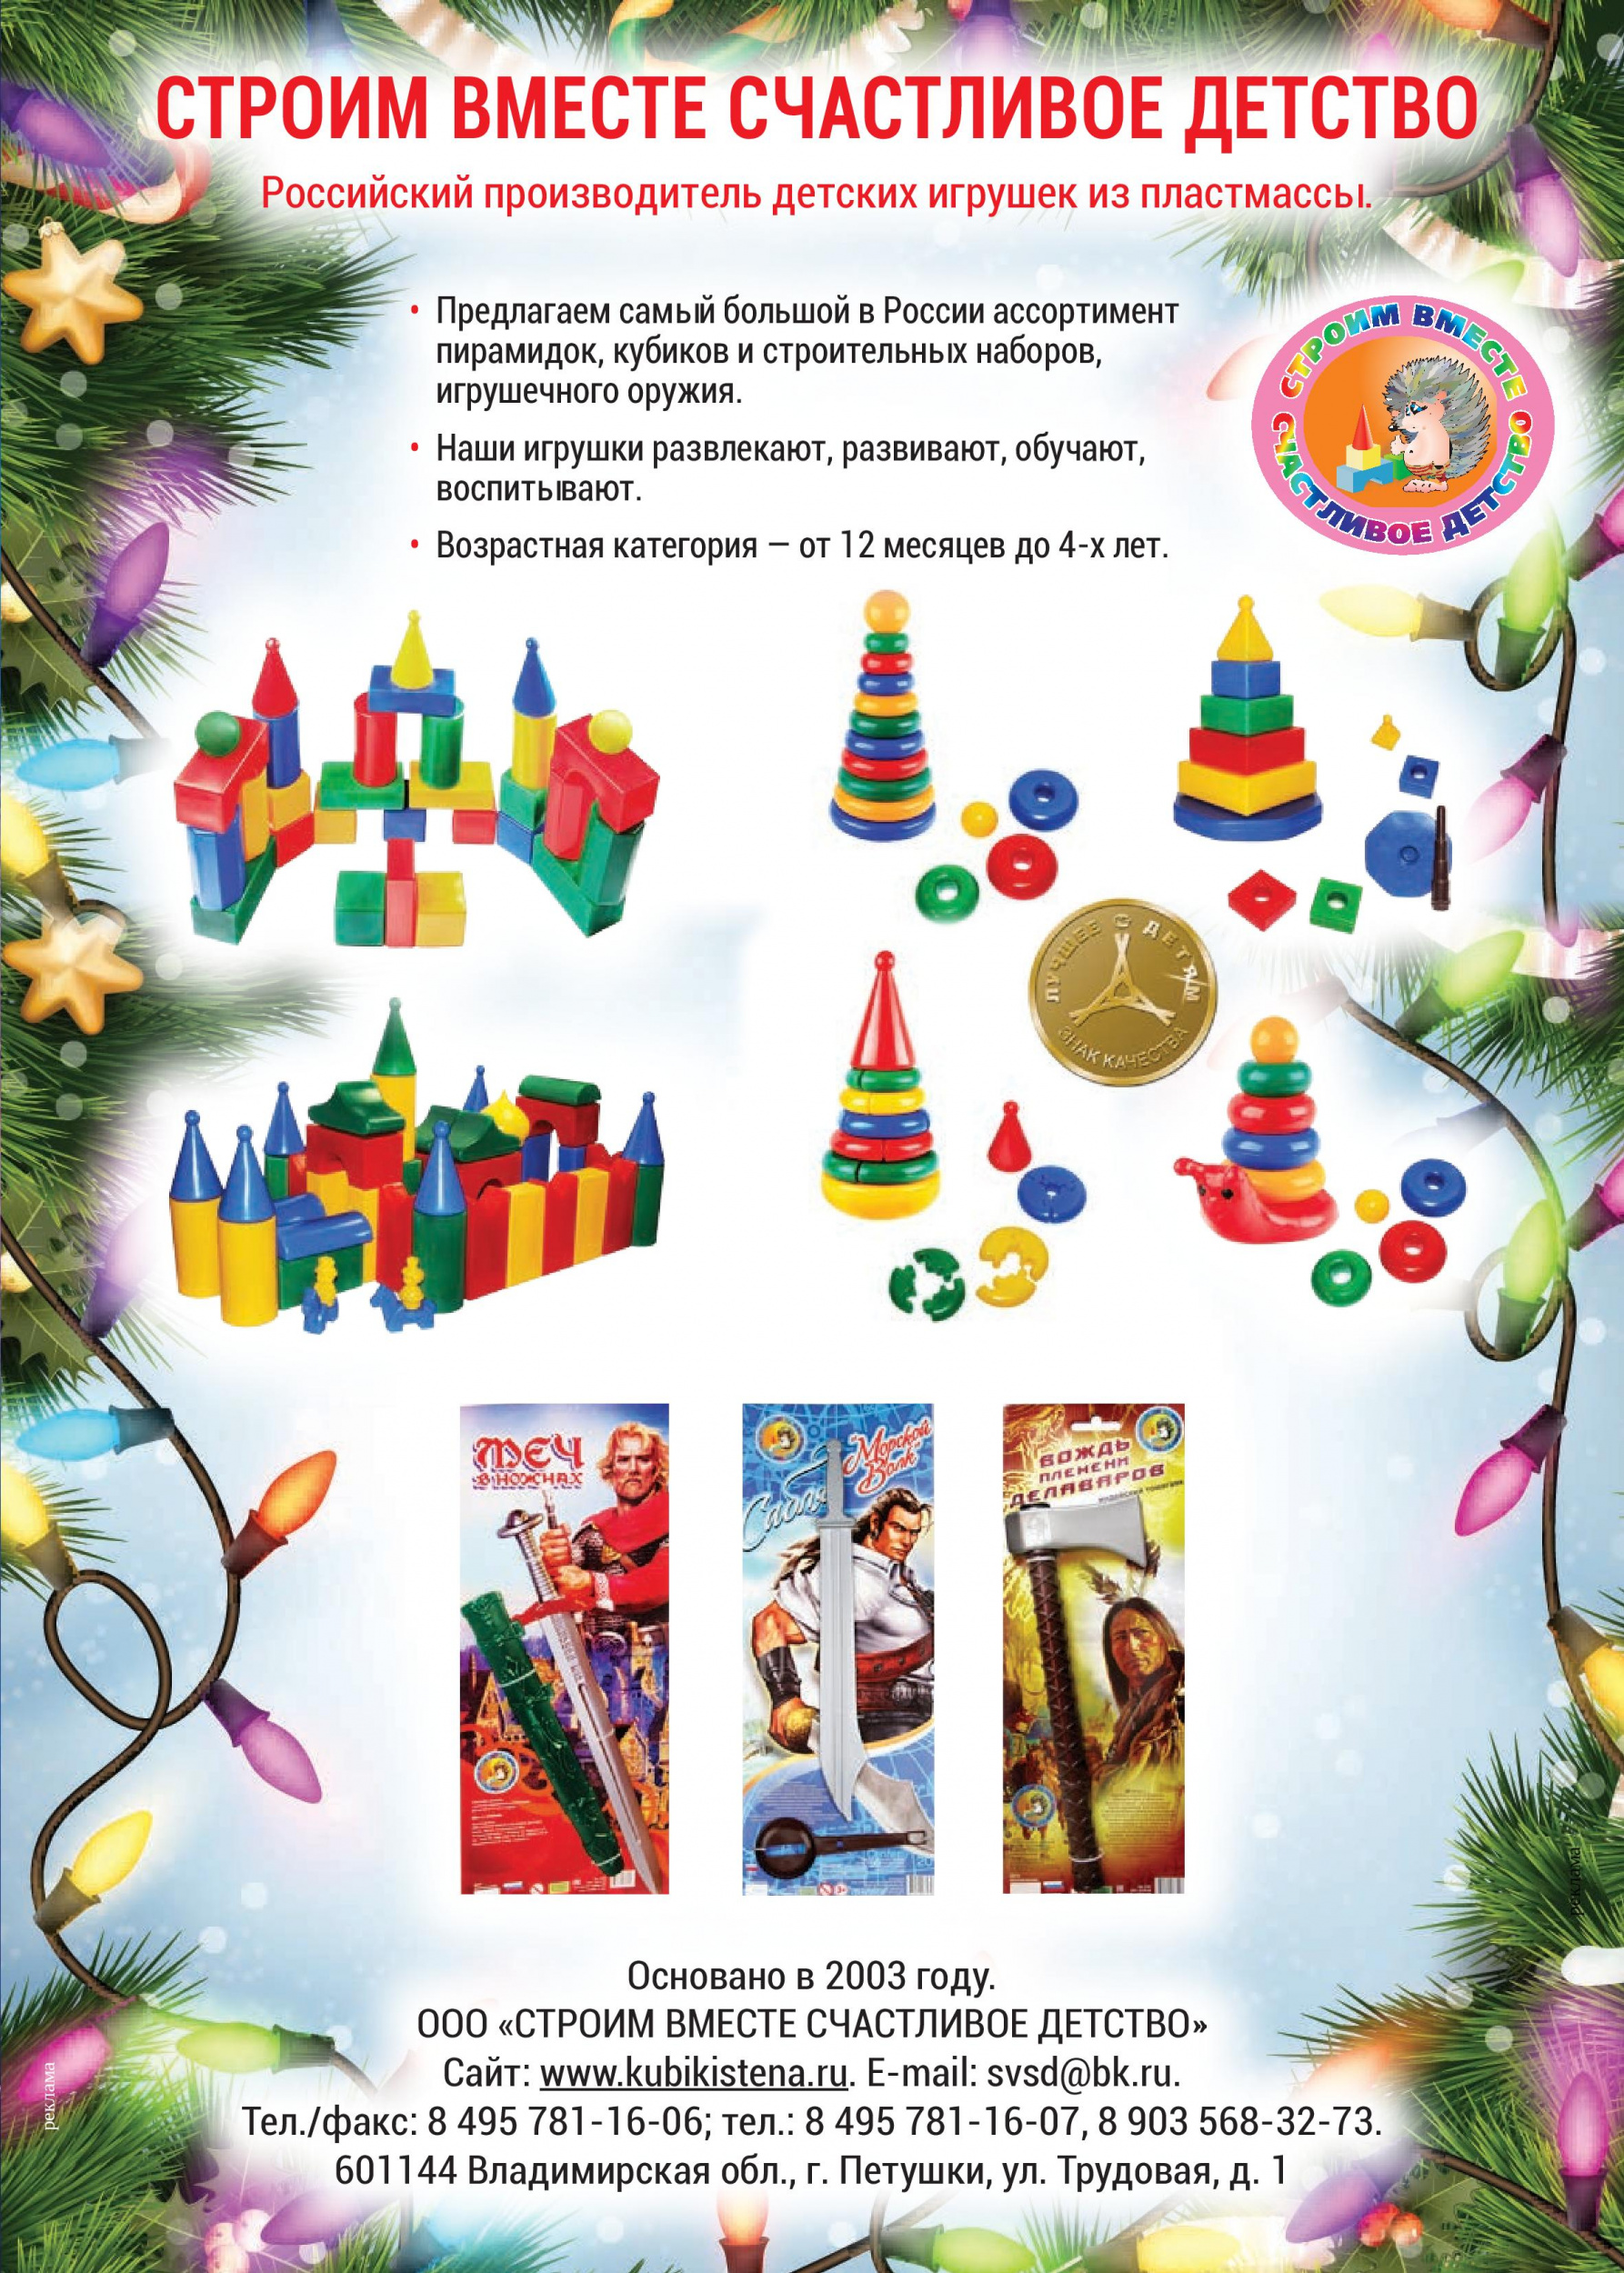 Российский производитель детских игрушек из пластмассы